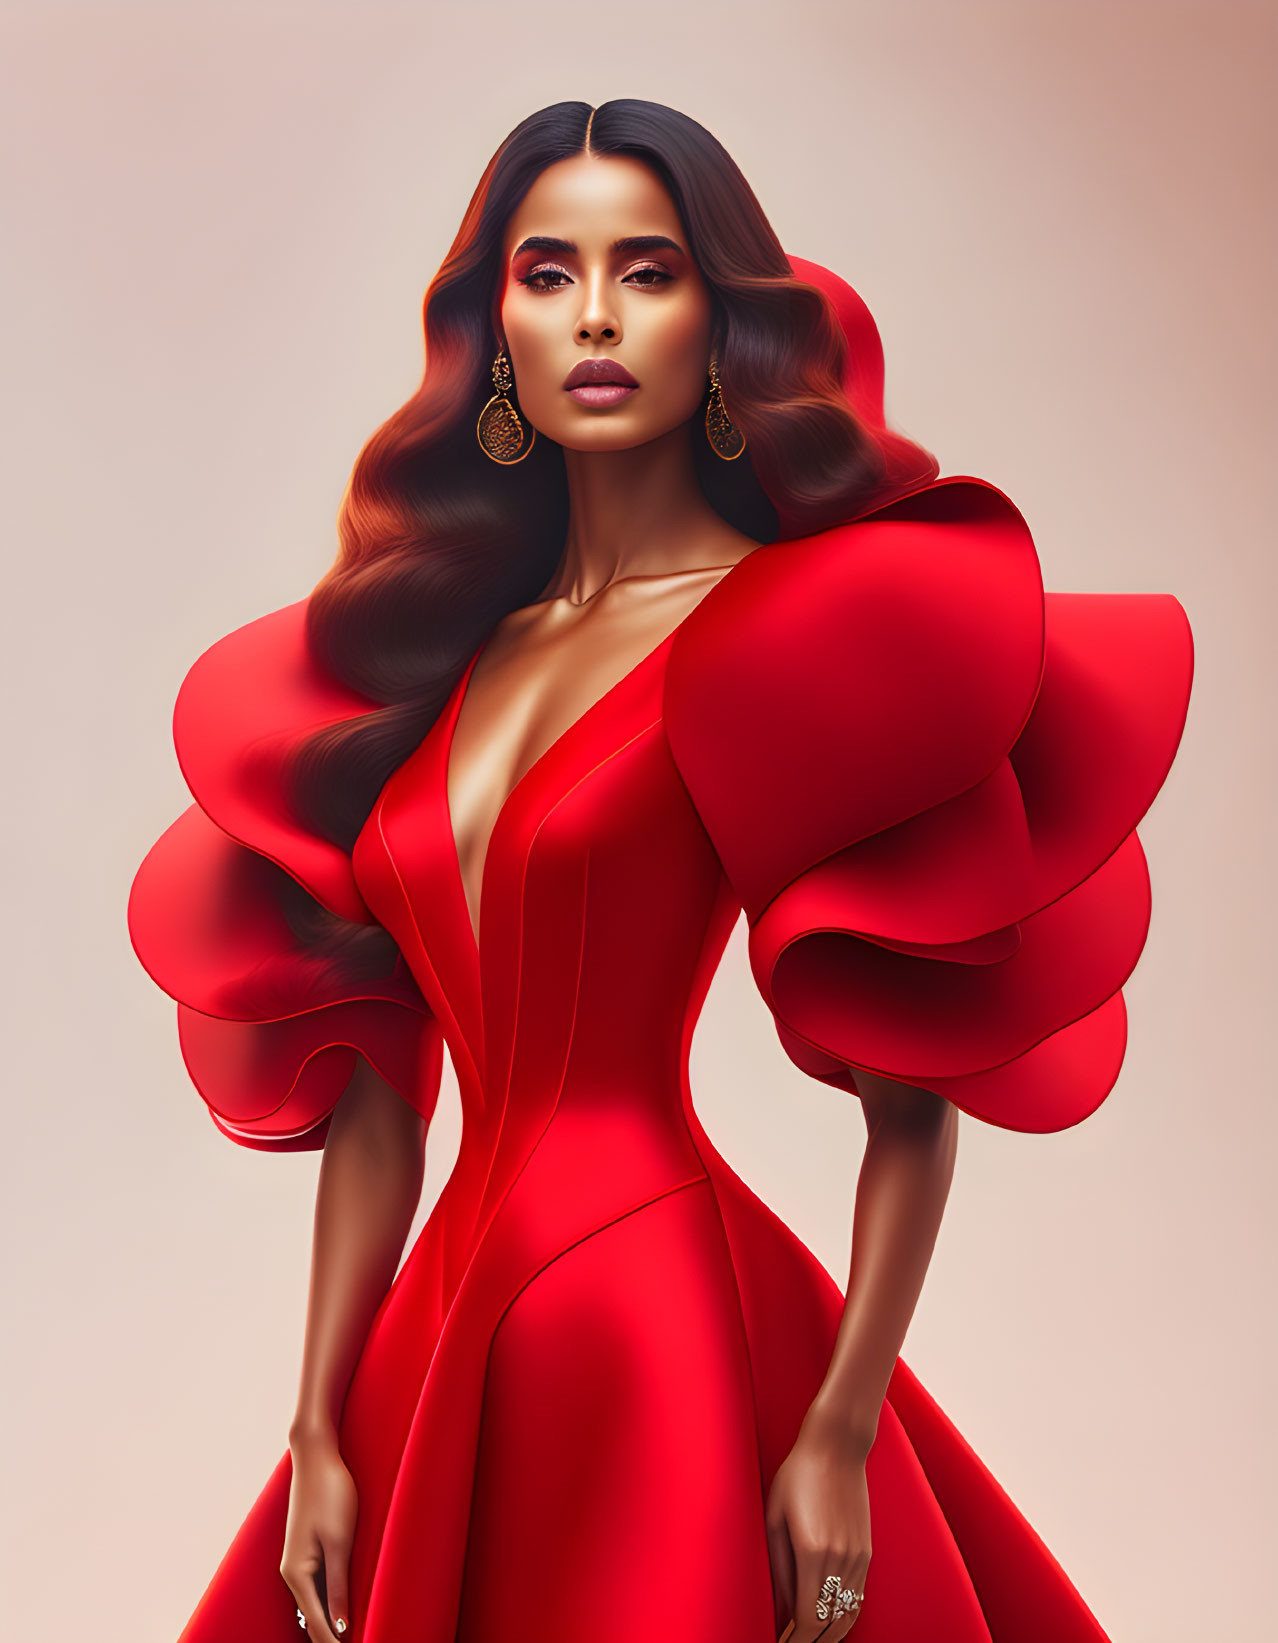 Digital artwork: Elegant woman in red dress with ruffled sleeves